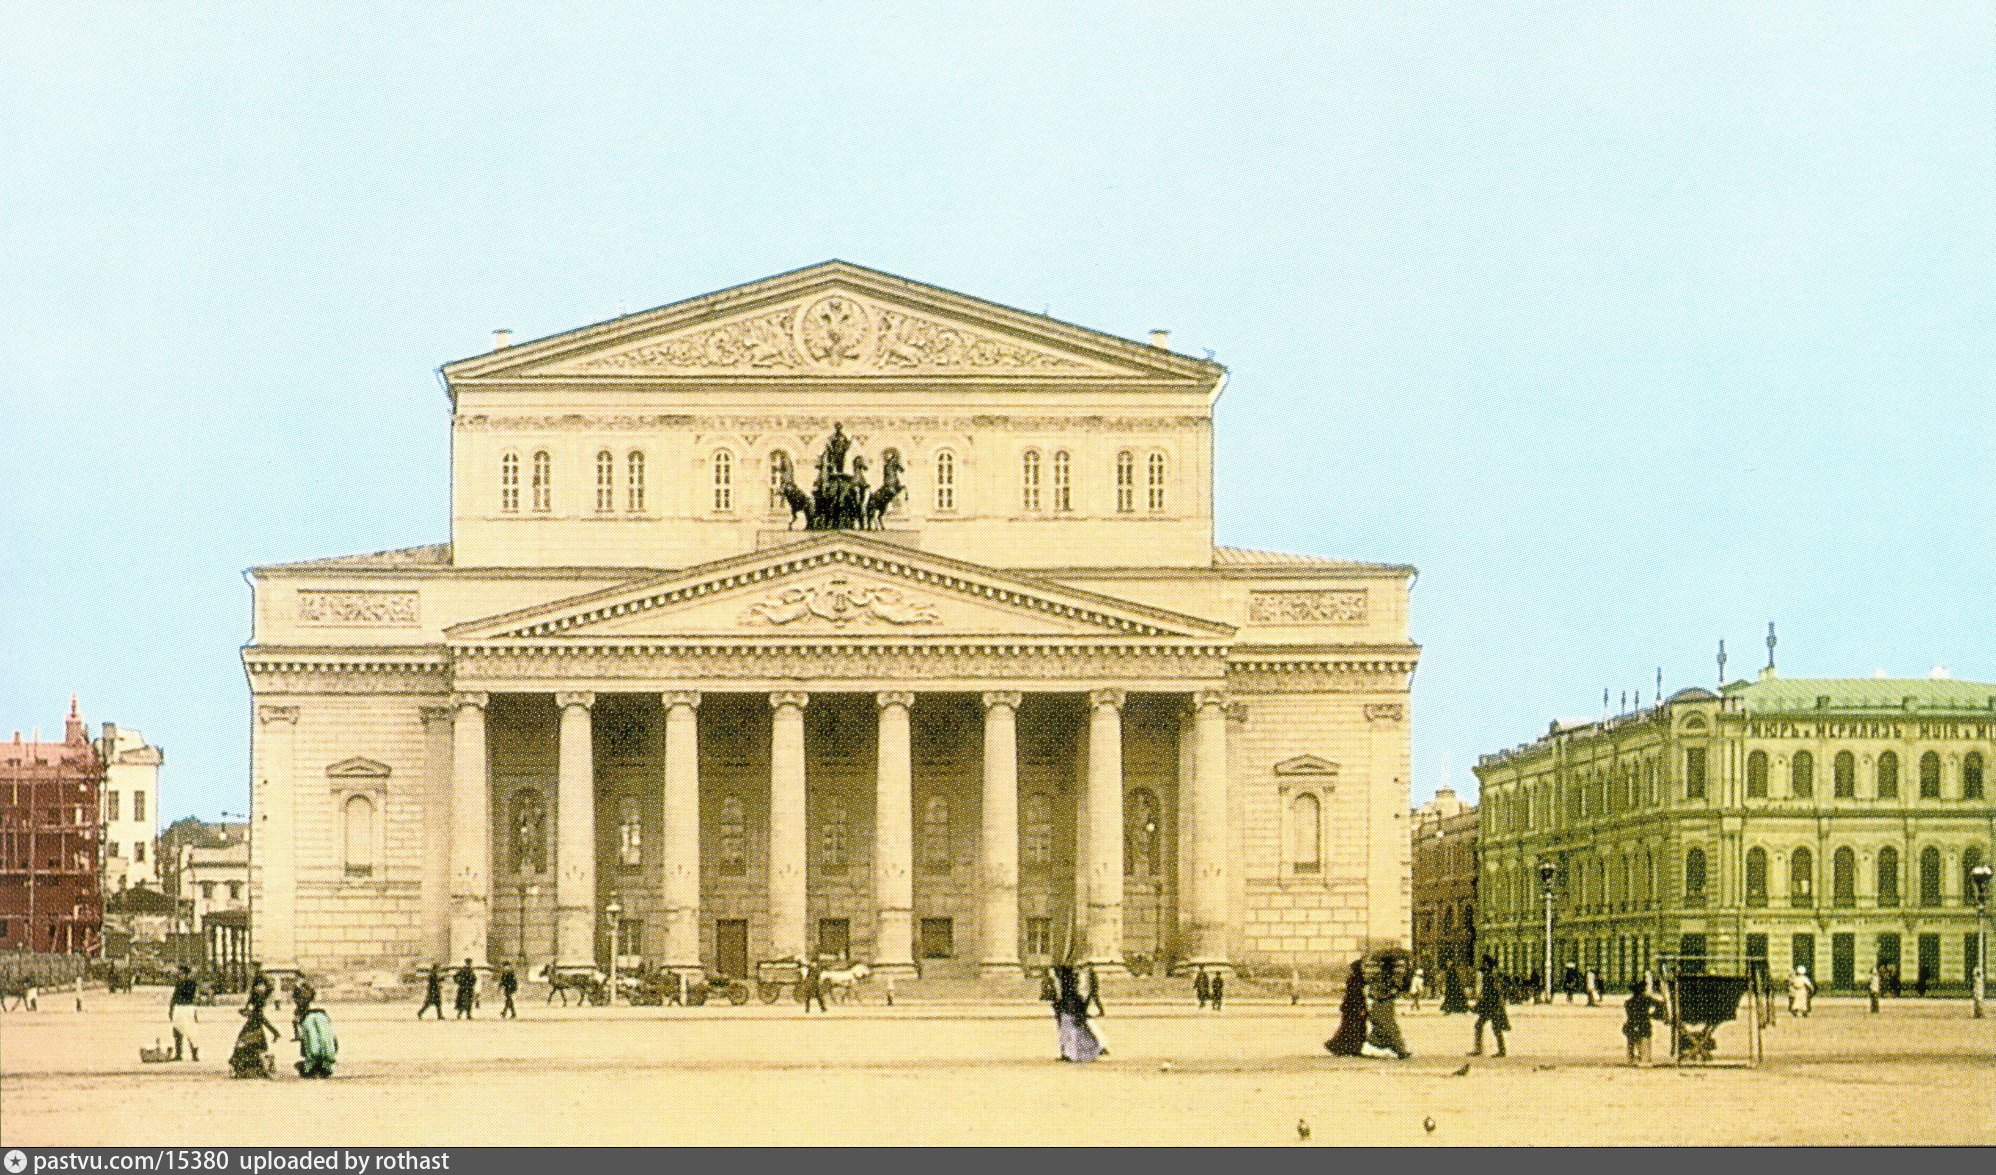 Московский городской театр